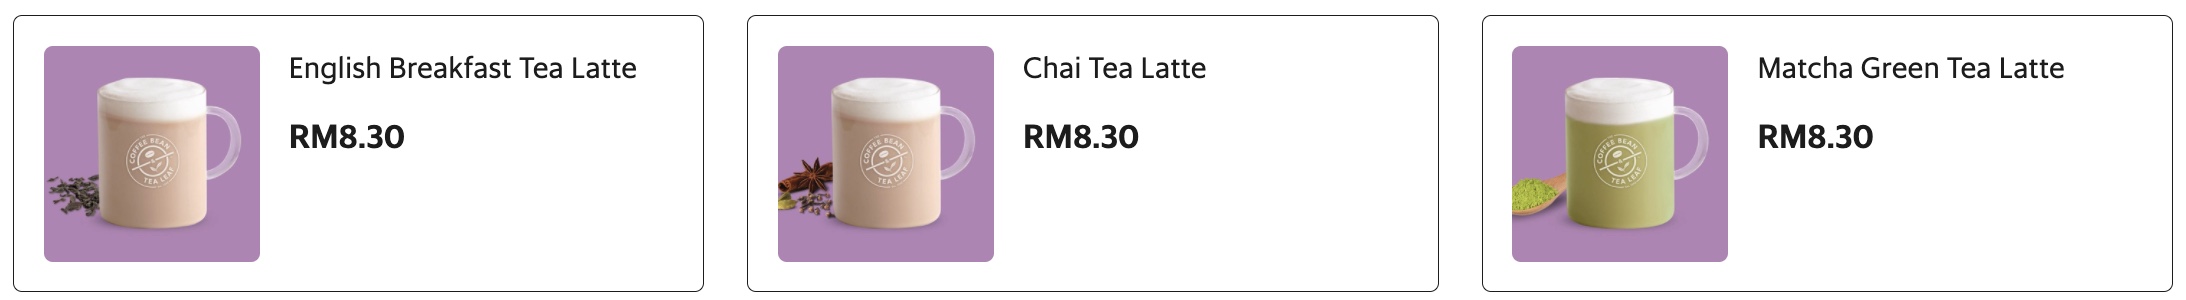 Tea Latte The Coffee Bean Tea Leaf Malaysia